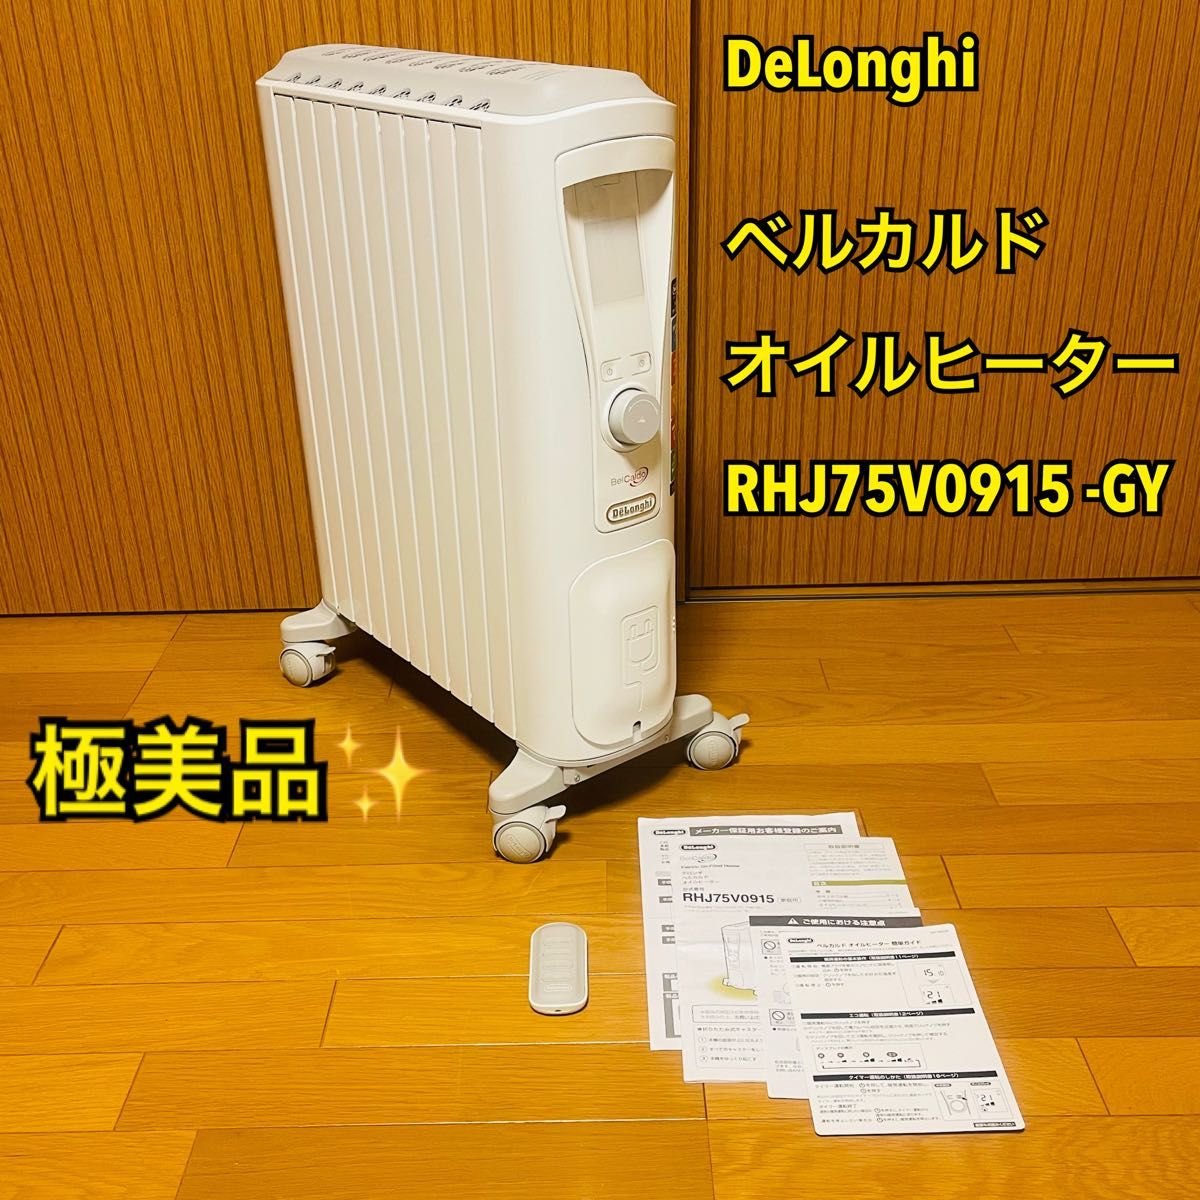 【極美品】DeLonghi デロンギ ベルカルド オイルヒーター RHJ75V0915 -GY